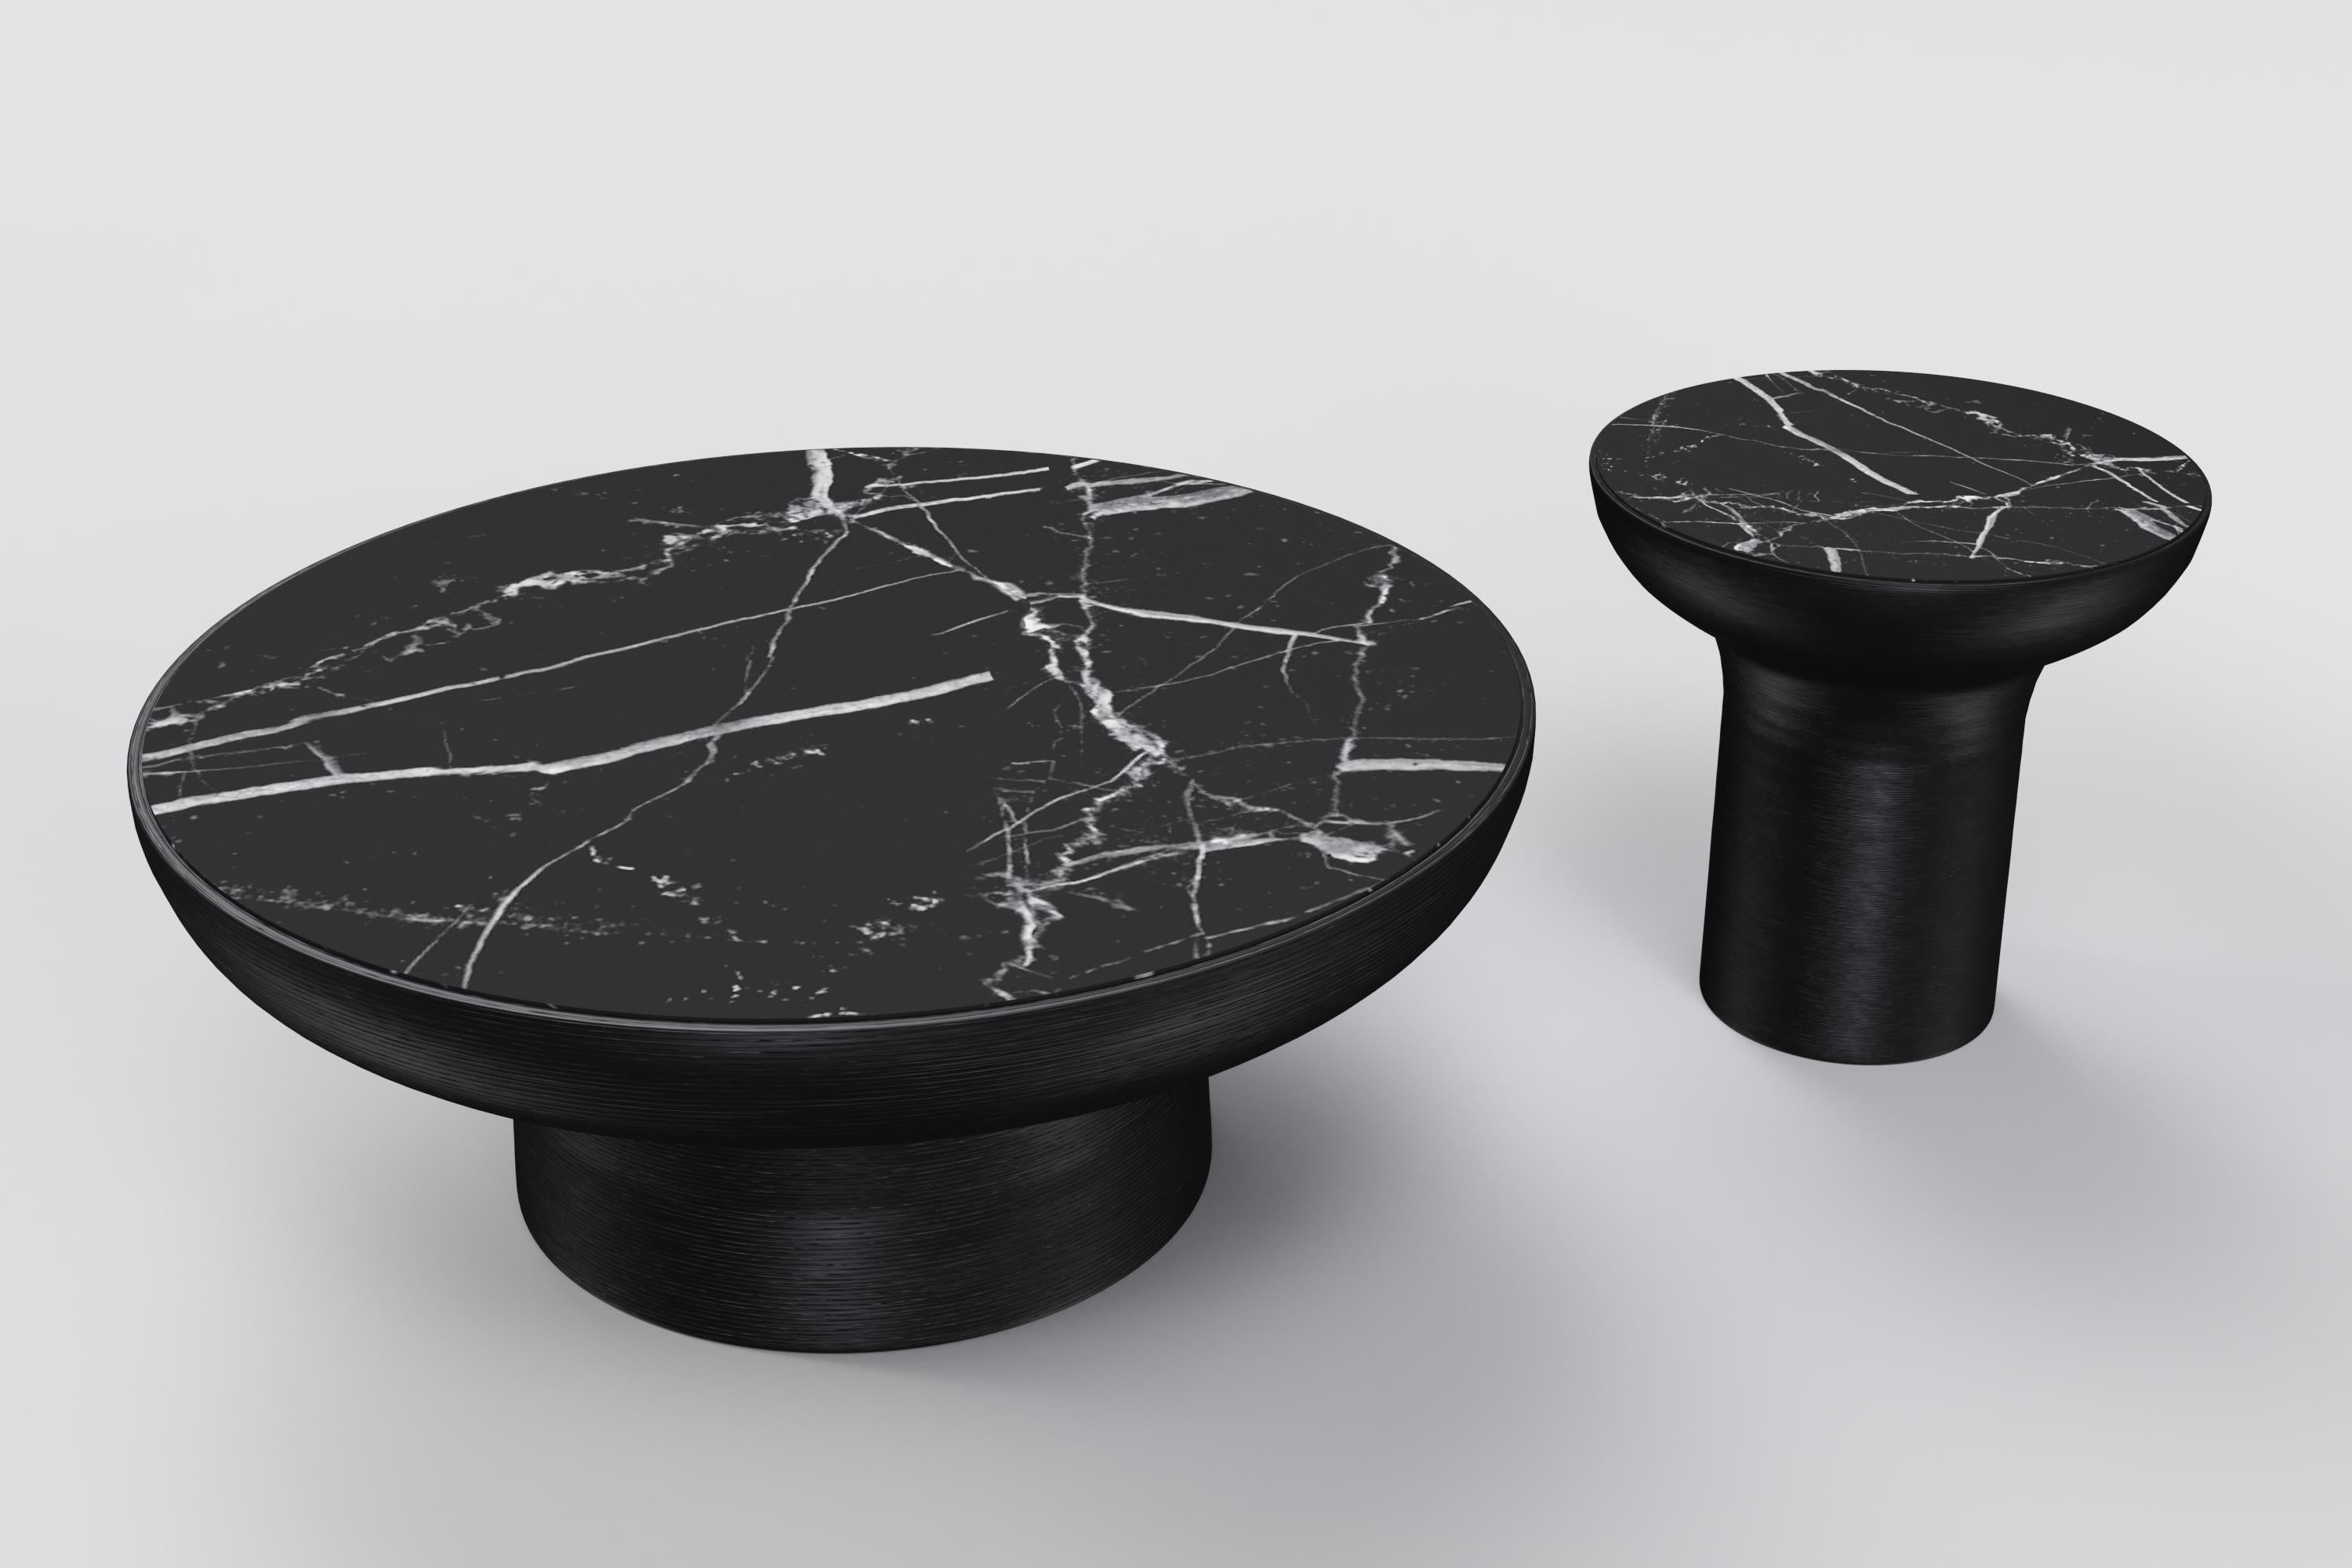 Le design s'inspire de l'art traditionnel consistant à former de l'argile sur une roue tournante. La table basse est dotée d'un plateau en marbre noir et d'une base noire réalisée avec un moule en résine texturé pour imiter une pièce jetée. 
Table